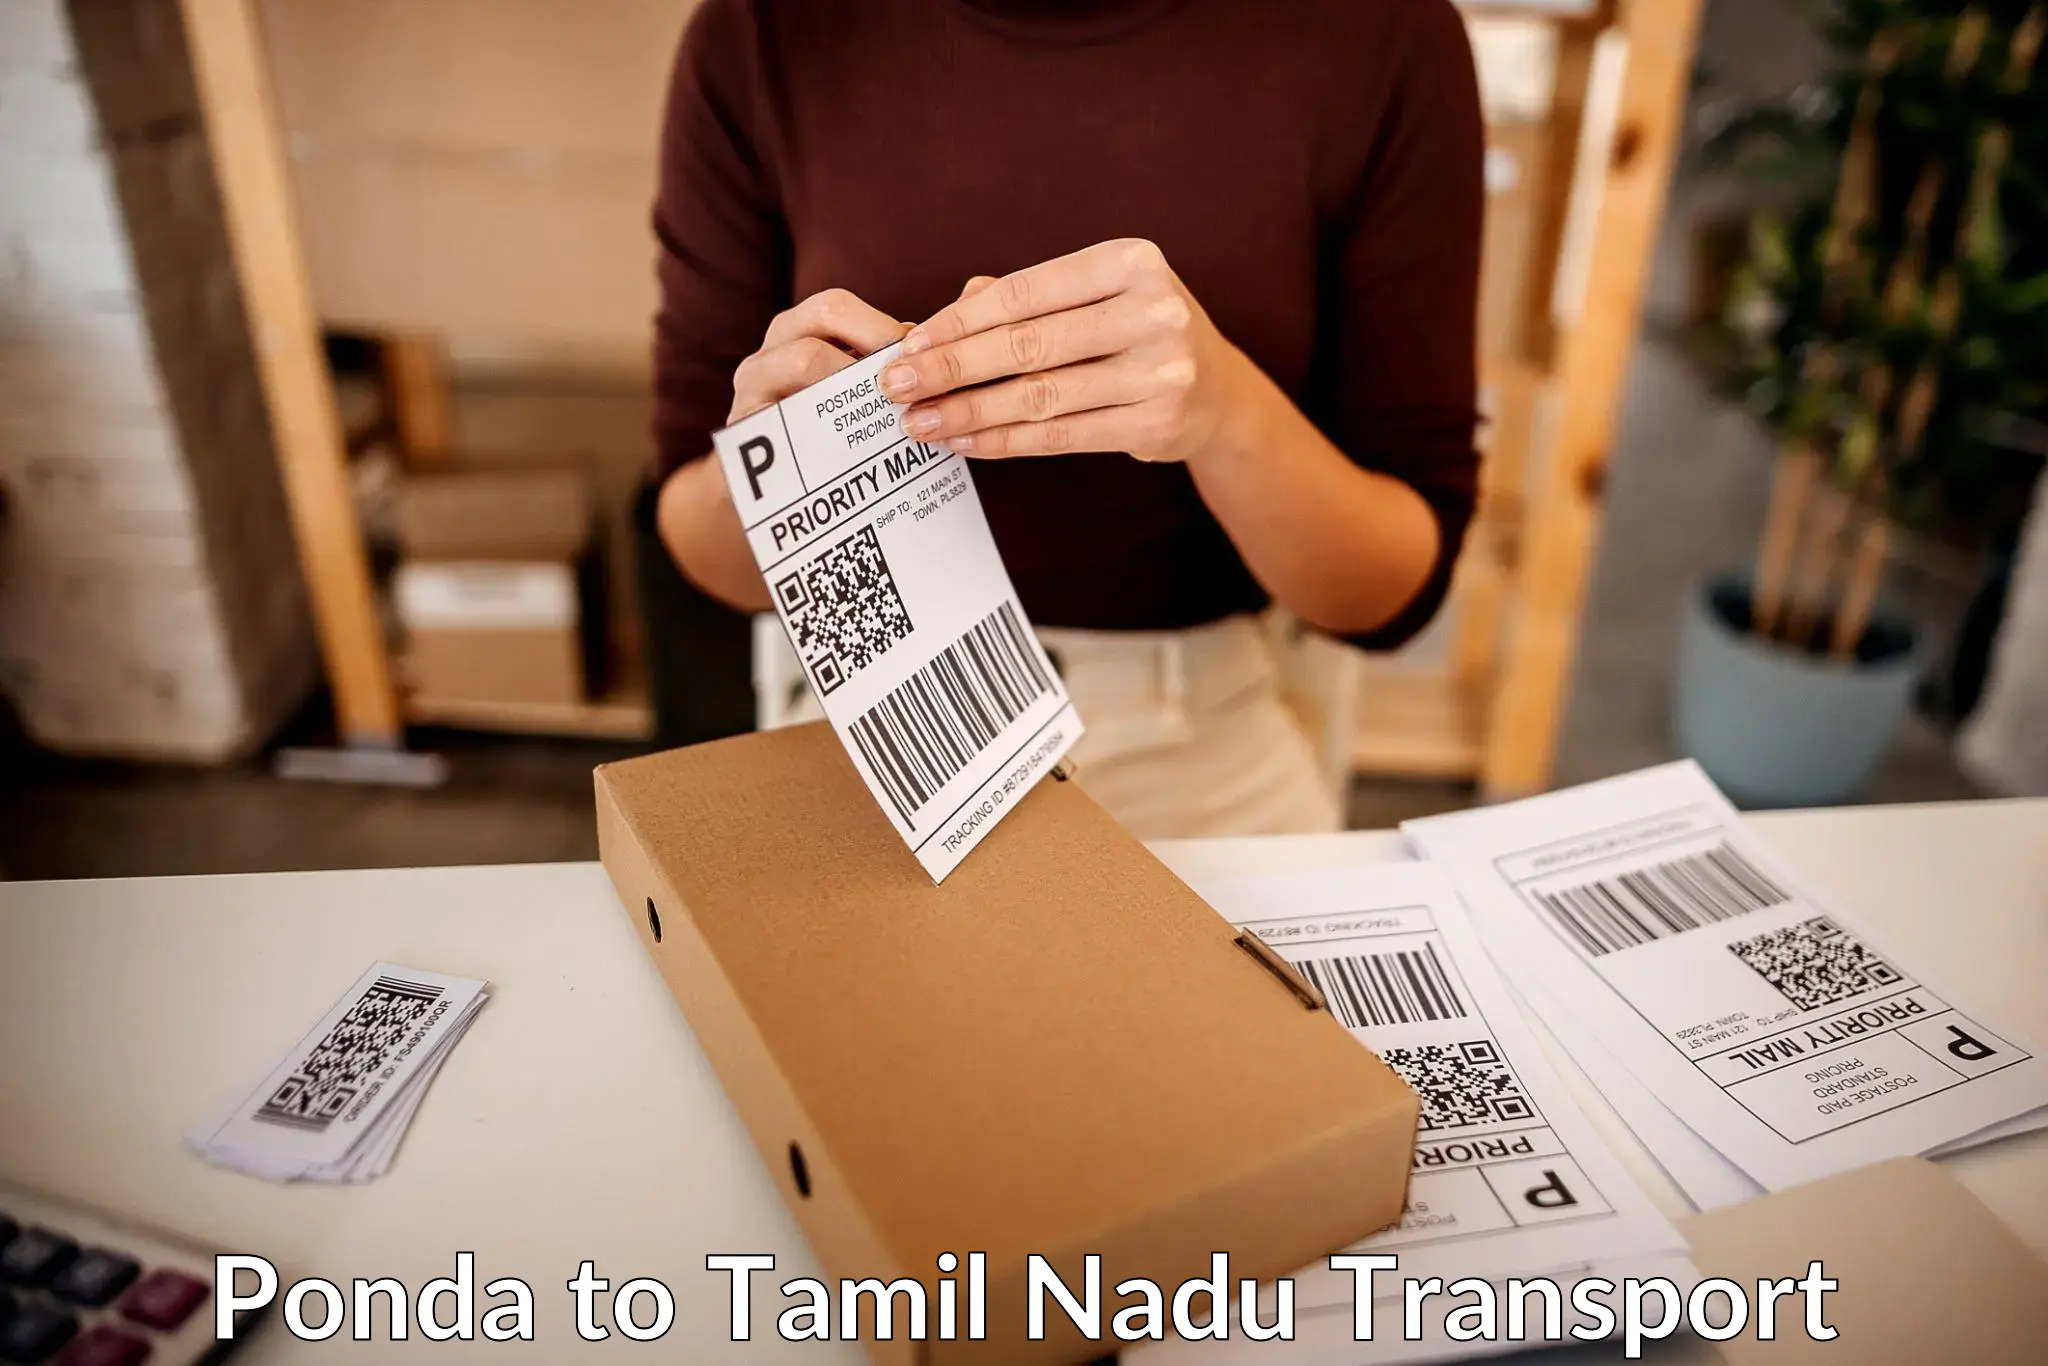 International cargo transportation services Ponda to Tiruchengodu